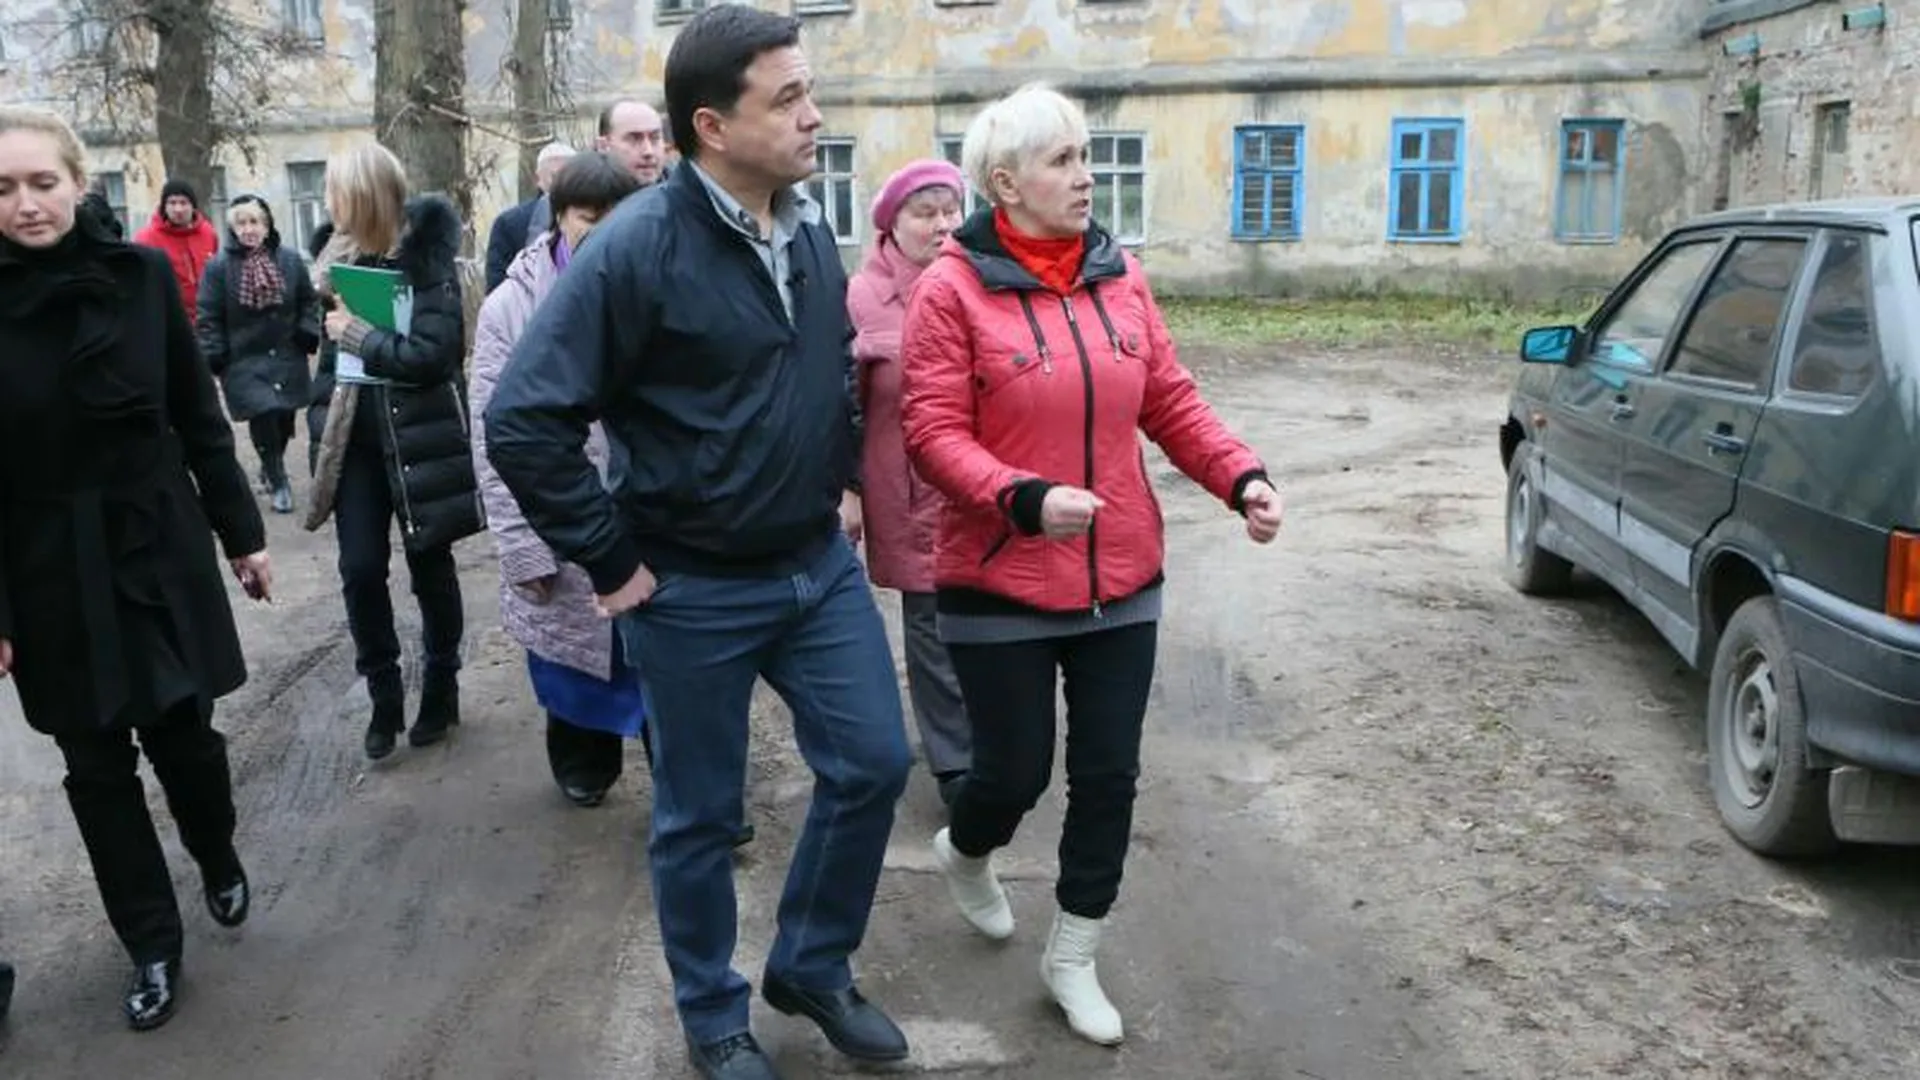 Жителей ветхих домов в Щелково расселят через год - Воробьев